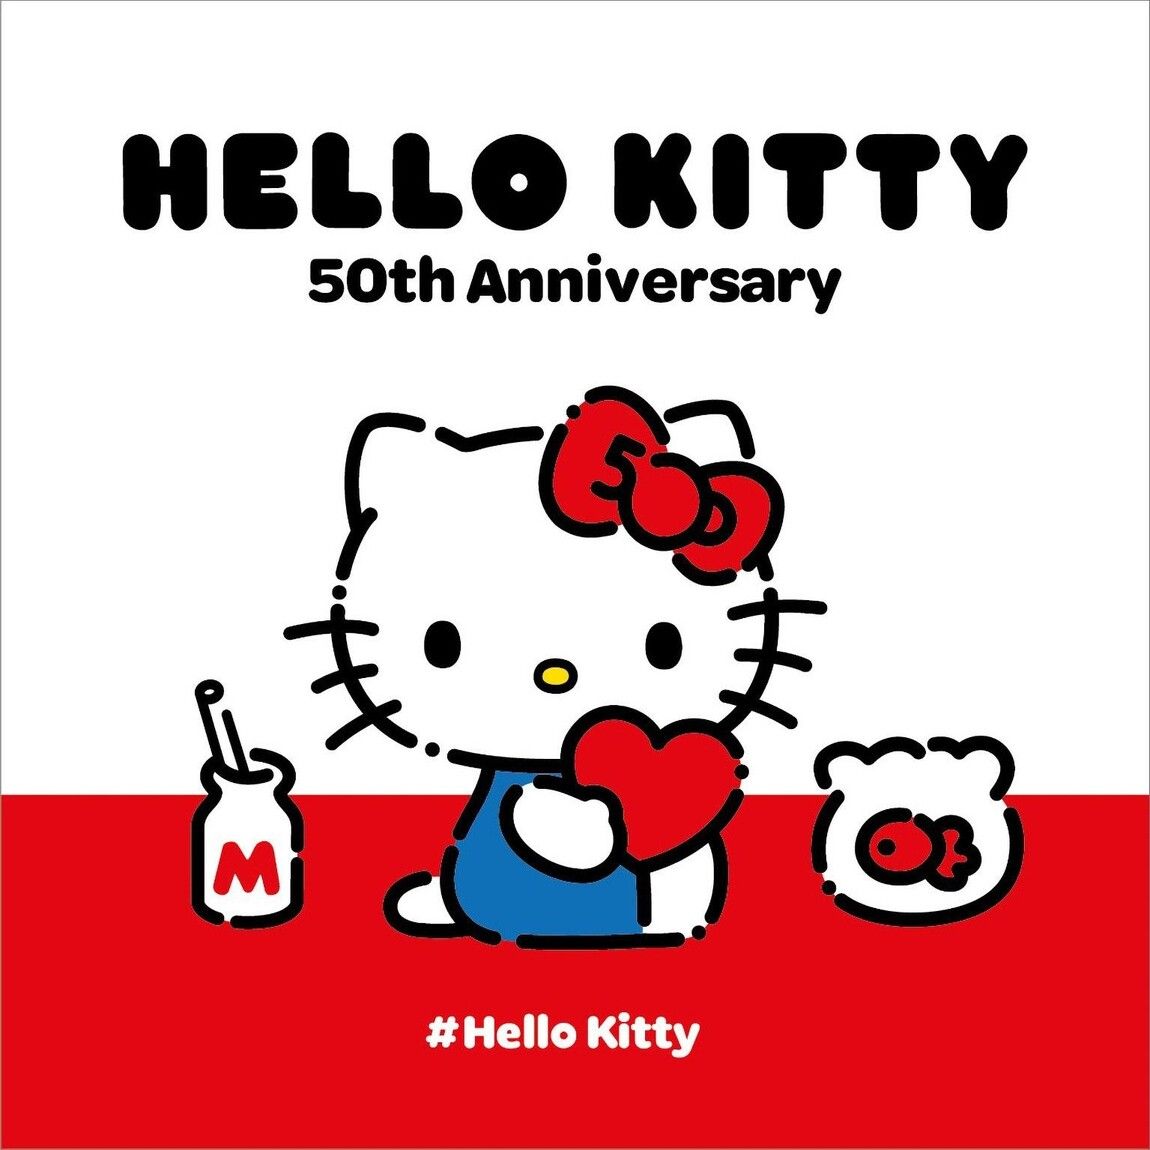 Hello Kitty lässt Fanherzen zum 50-jährigen Jubiläum höher schlagen